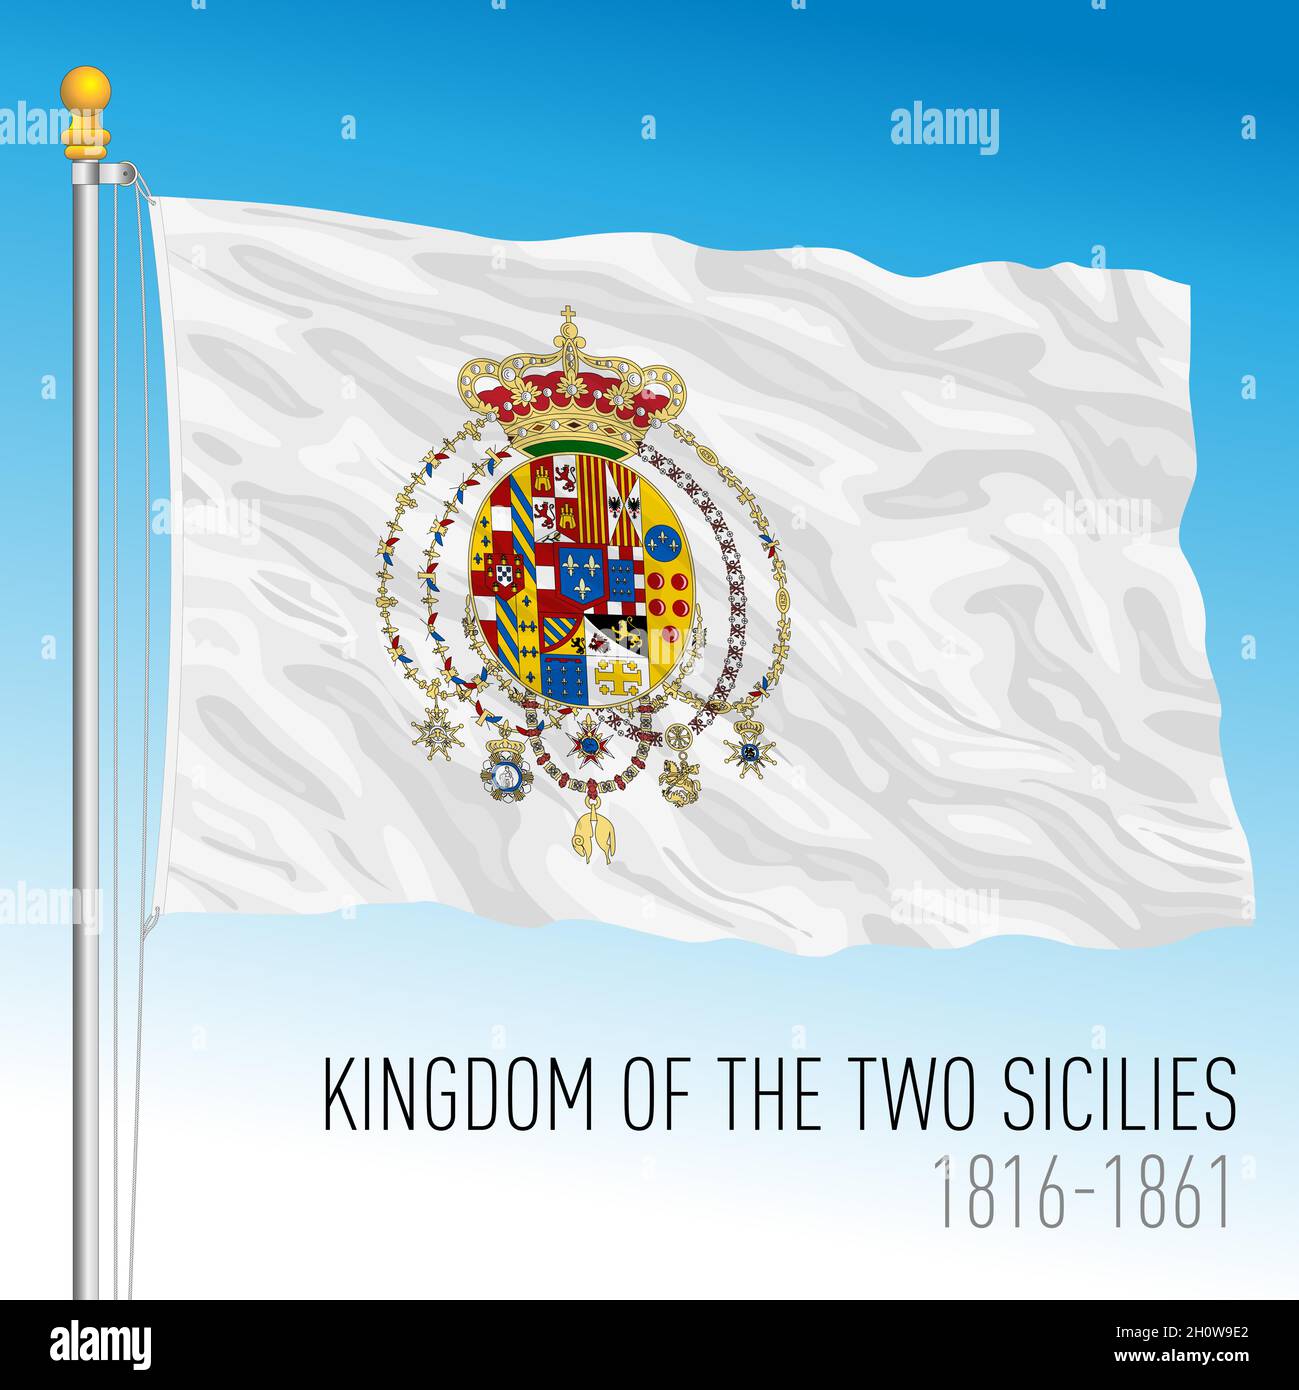 Königreich der zwei Sizilien historische Flagge, Italien, 1816 - 1861, Vektorgrafik Stock Vektor